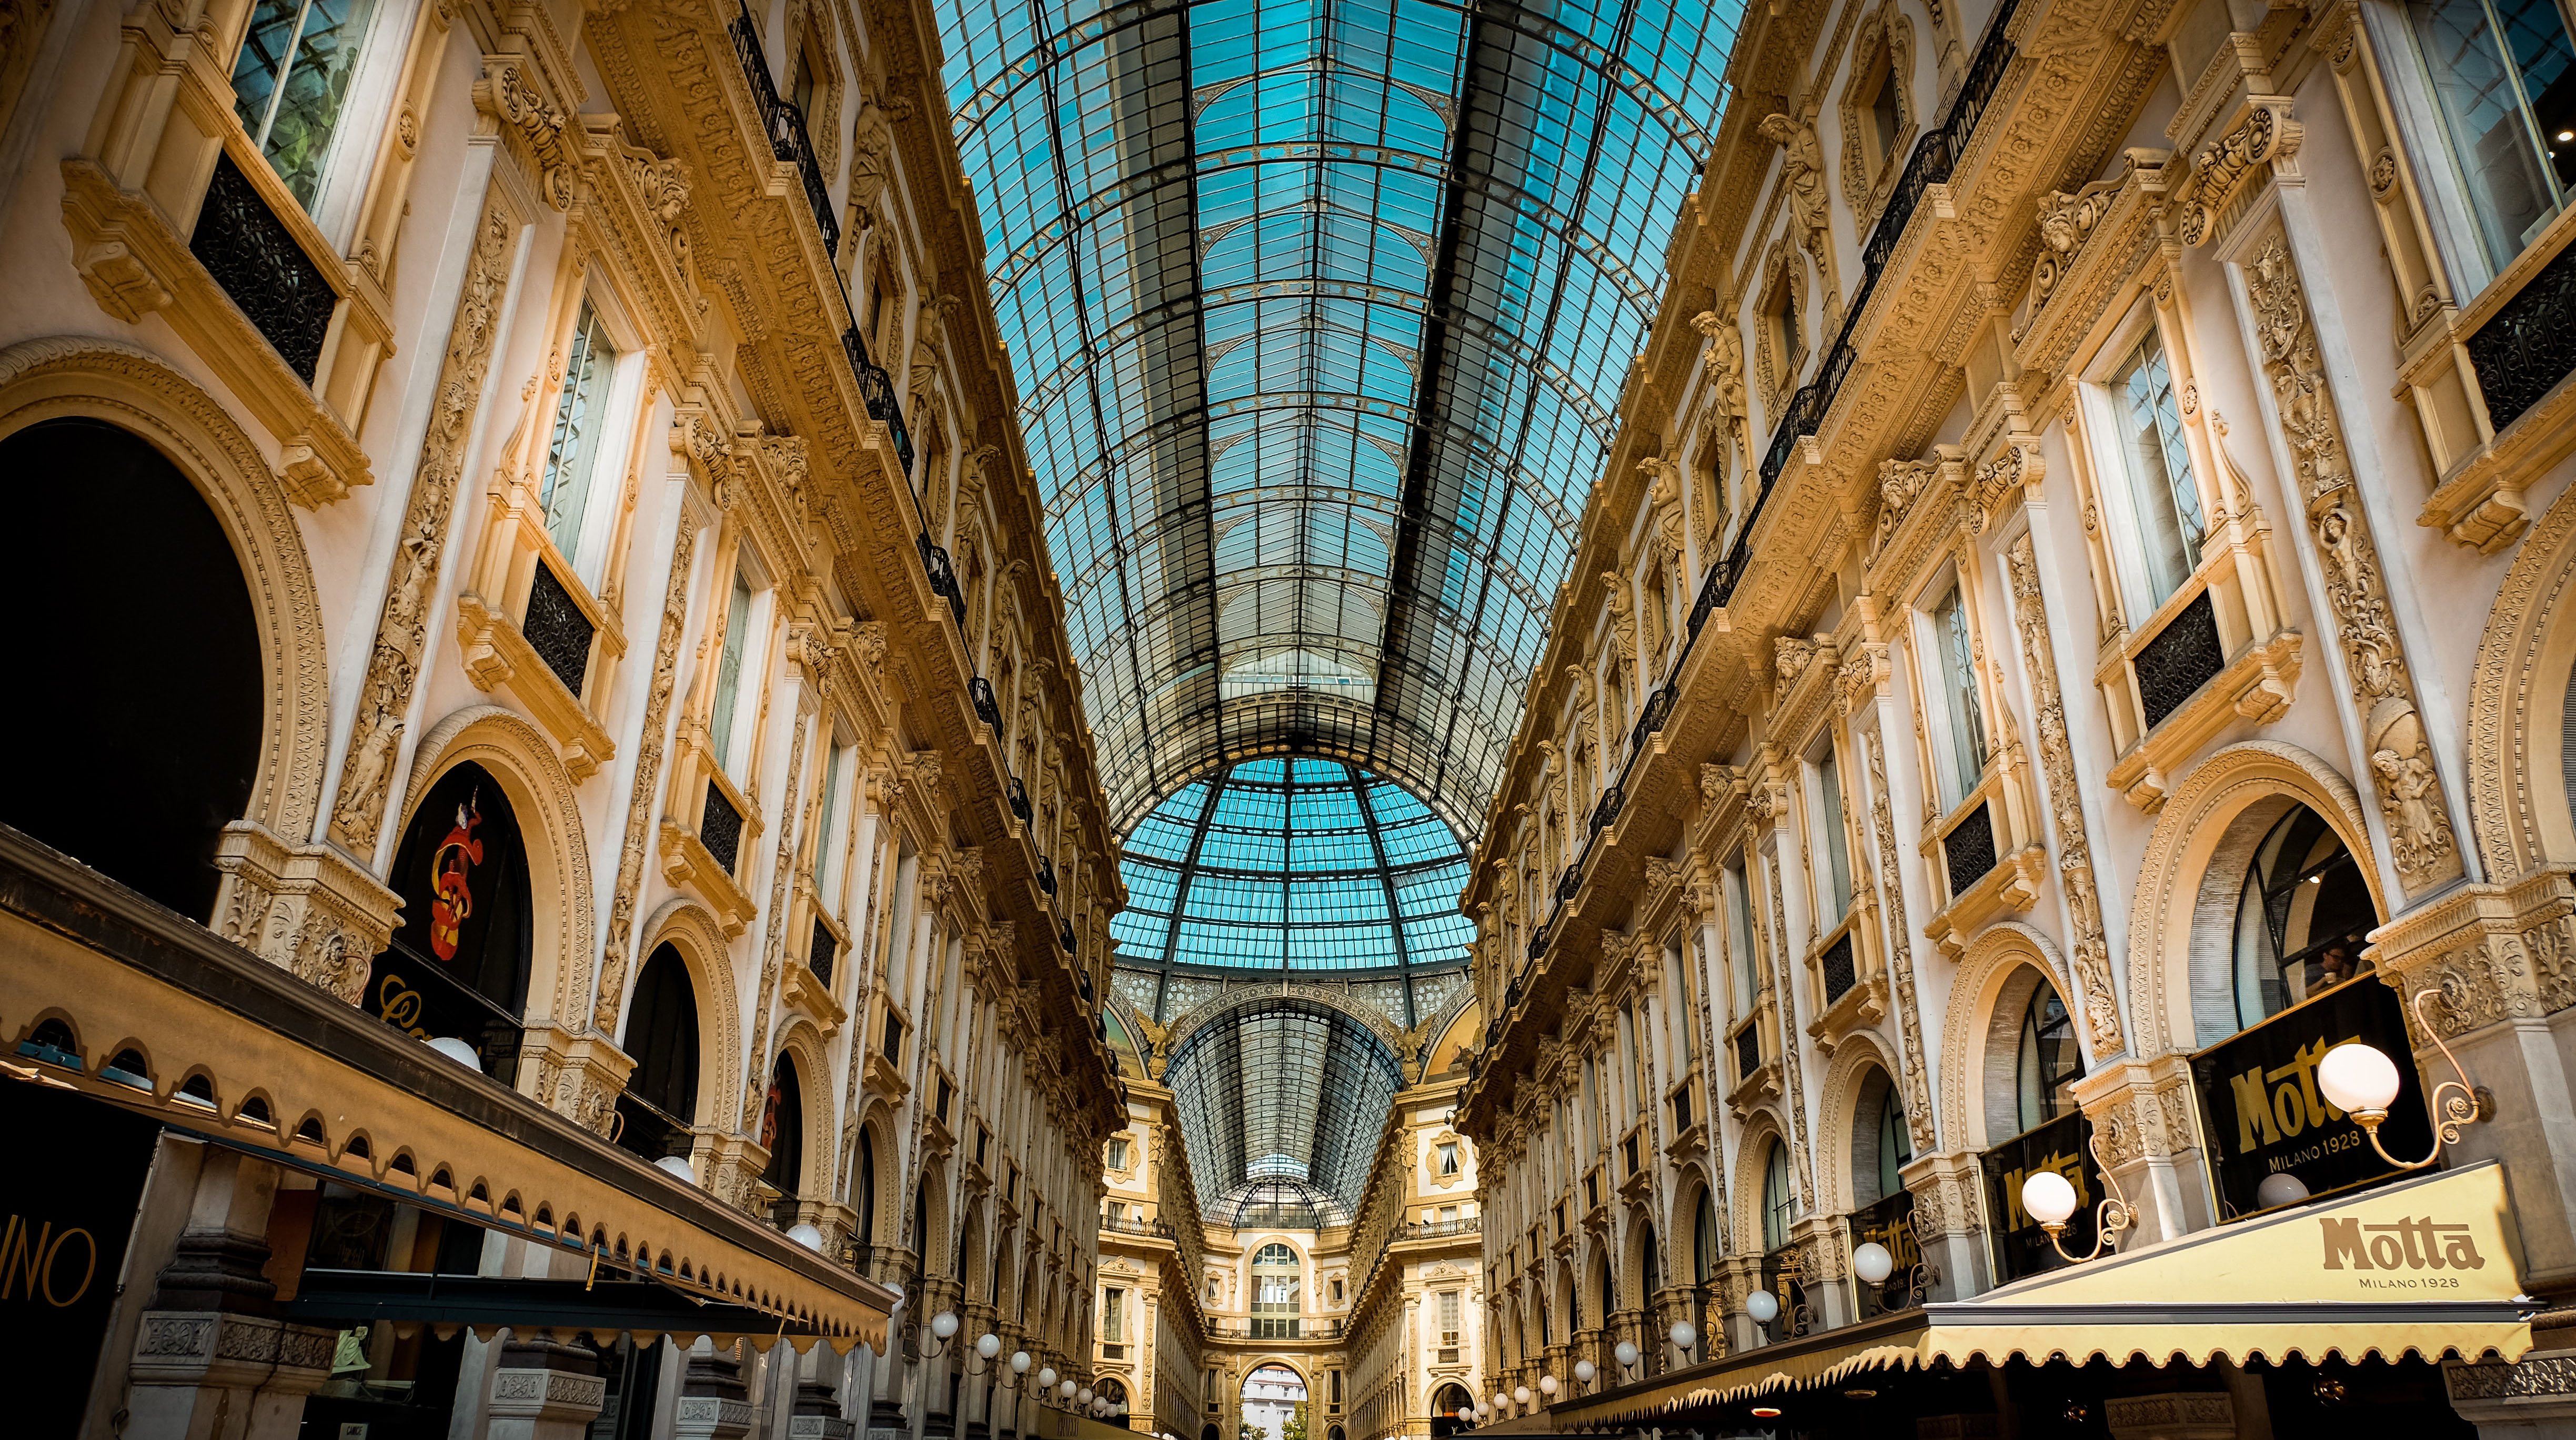 Galleria Vittorio Emanuelle II in Mailand, historische Einfkaufsgalerie im Zentrum der Stadt, Städtetrip nach Mailand